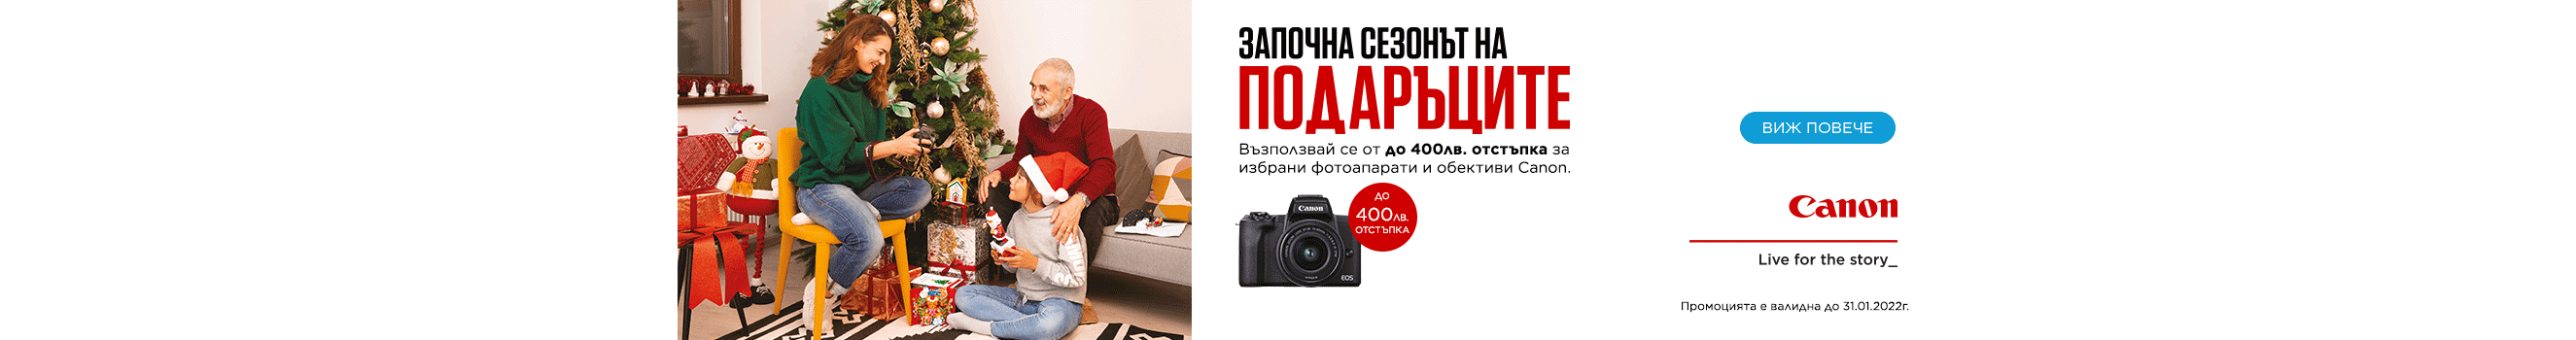 Фотоапарати и обективи Canon с до 400 лв. отстъпка в магазини ФотоСинтезис 